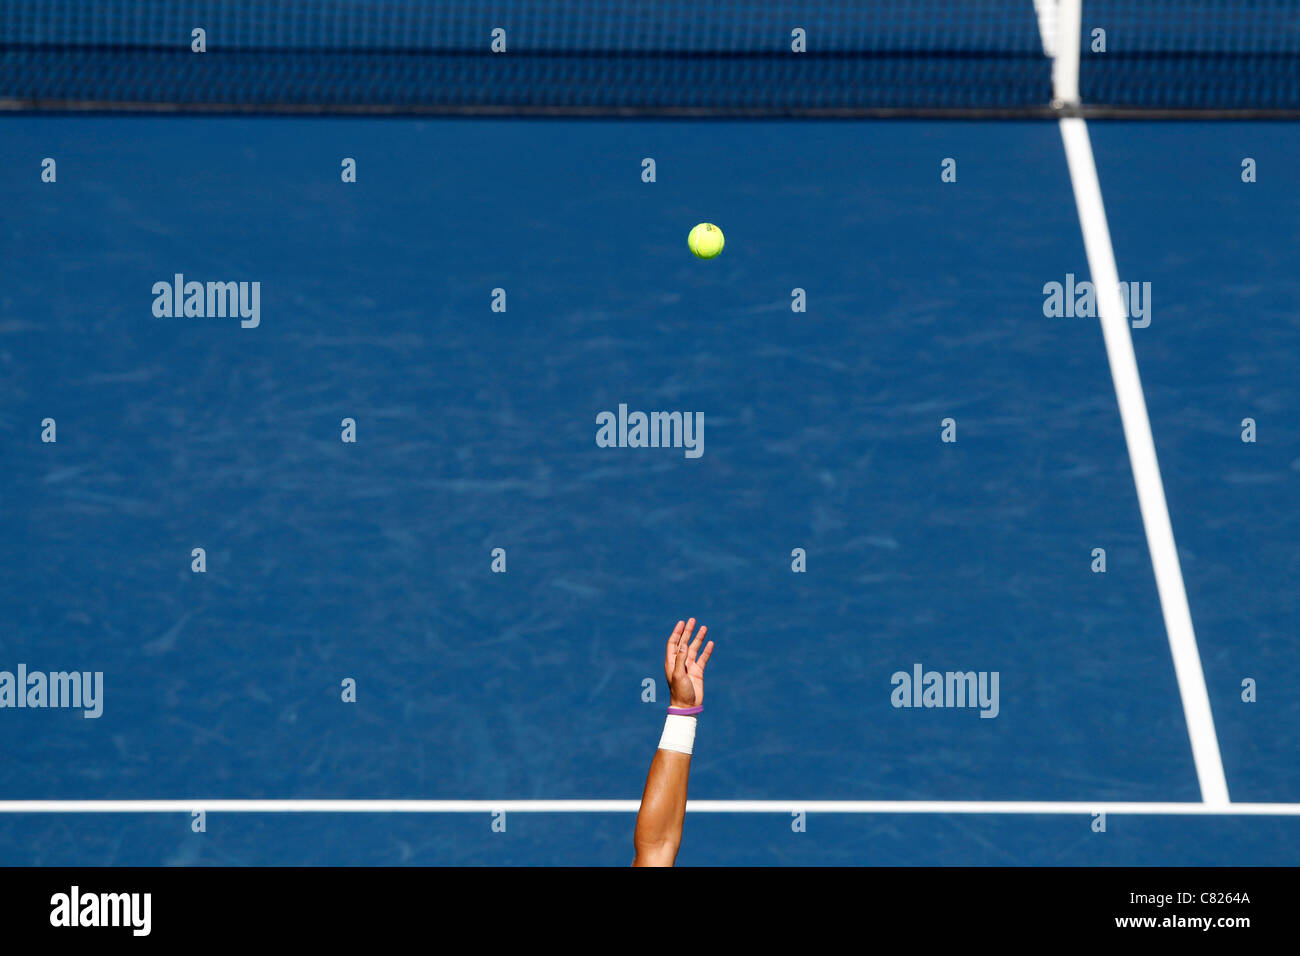 Service au tennis, le bras de lancer la balle en l'air à l'avant du filet à l'US Open 2011 Tournoi de tennis Banque D'Images